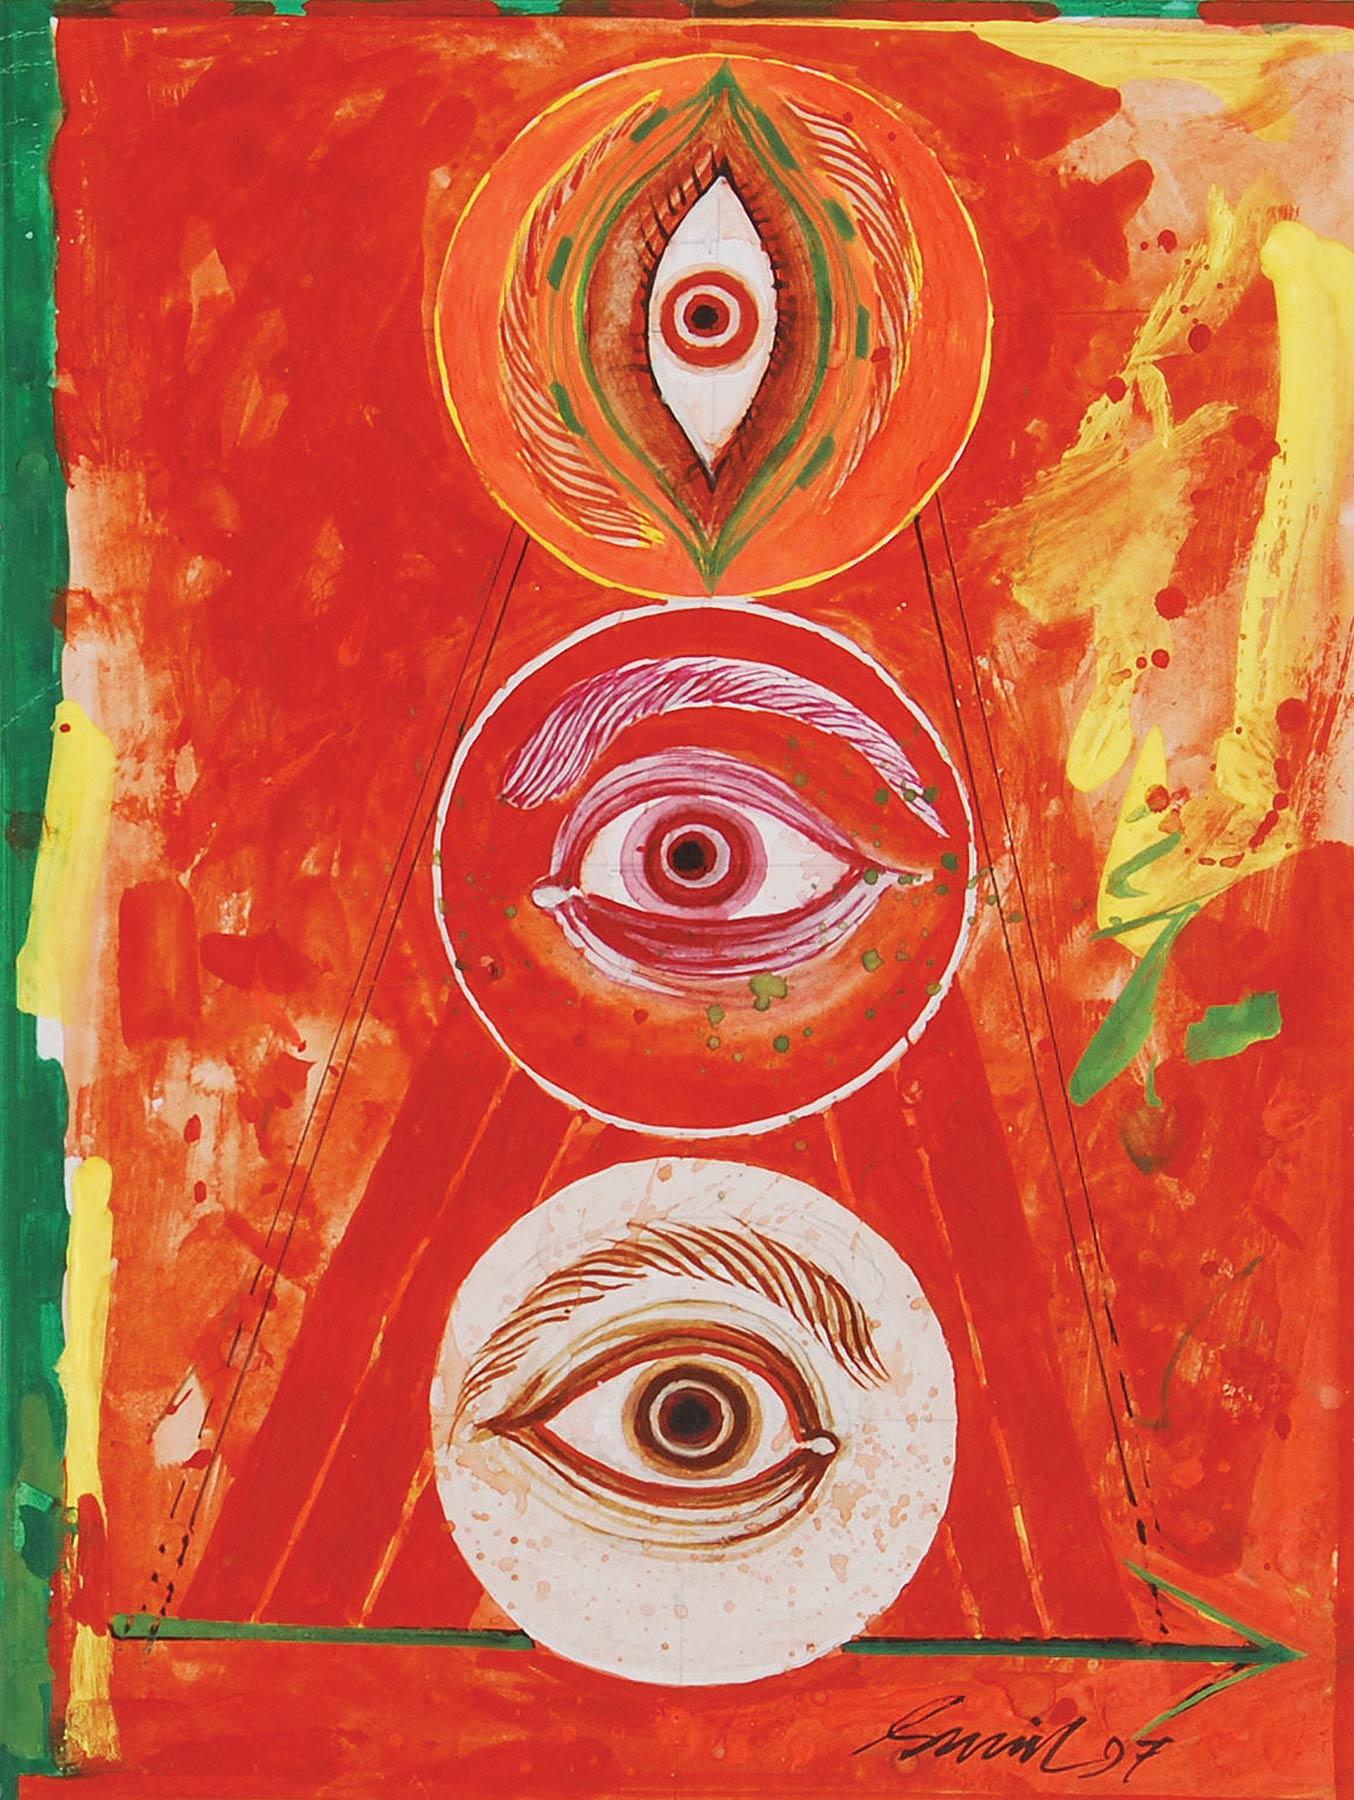 Durga 97, technique mixte sur panneau, rouge, jaune, vert par l'artiste indien « En stock »